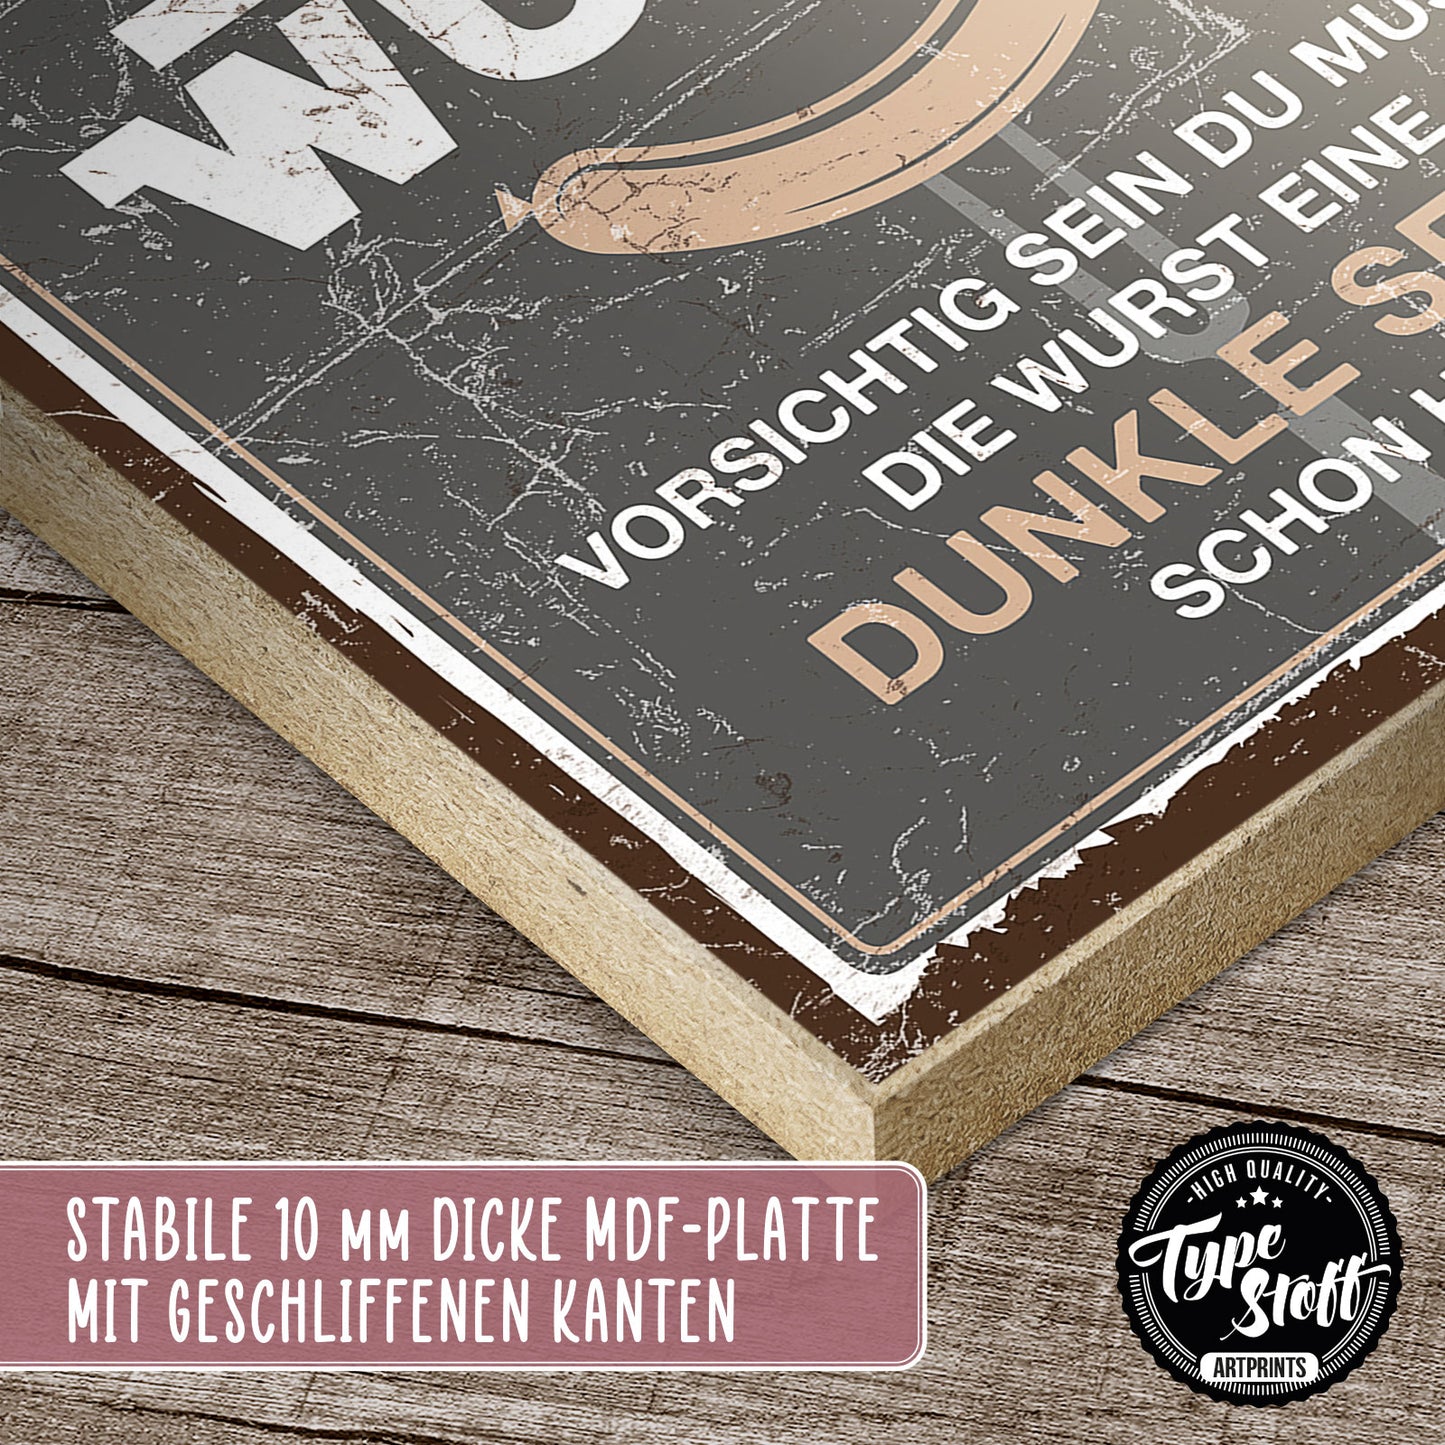 Holzschild mit Spruch - Starwurst - dunkle Seite – HS-QN-00495